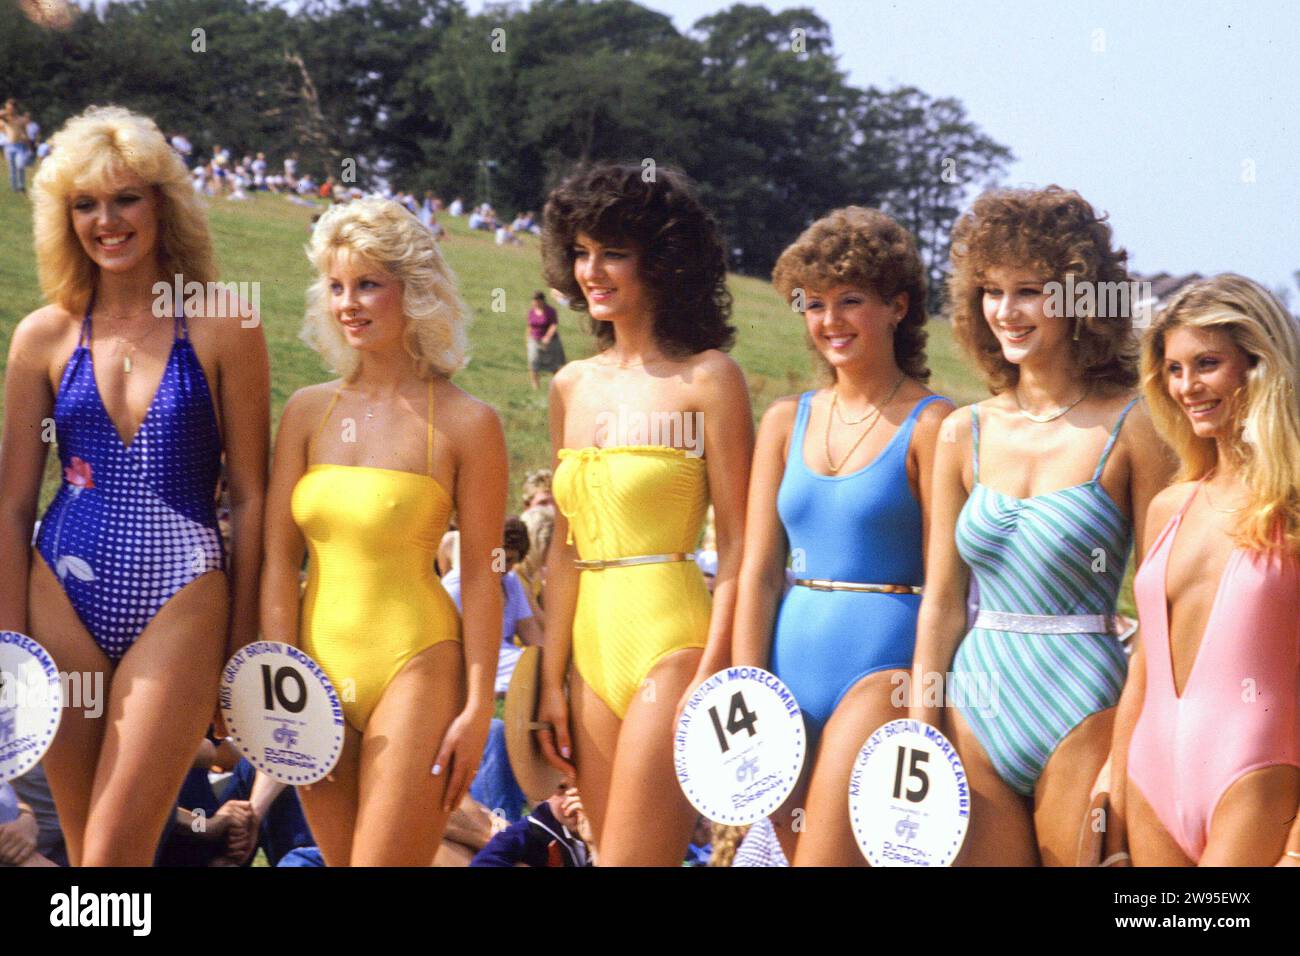 Une Miss Grande-Bretagne Heat à Donington Park en 1984 Banque D'Images